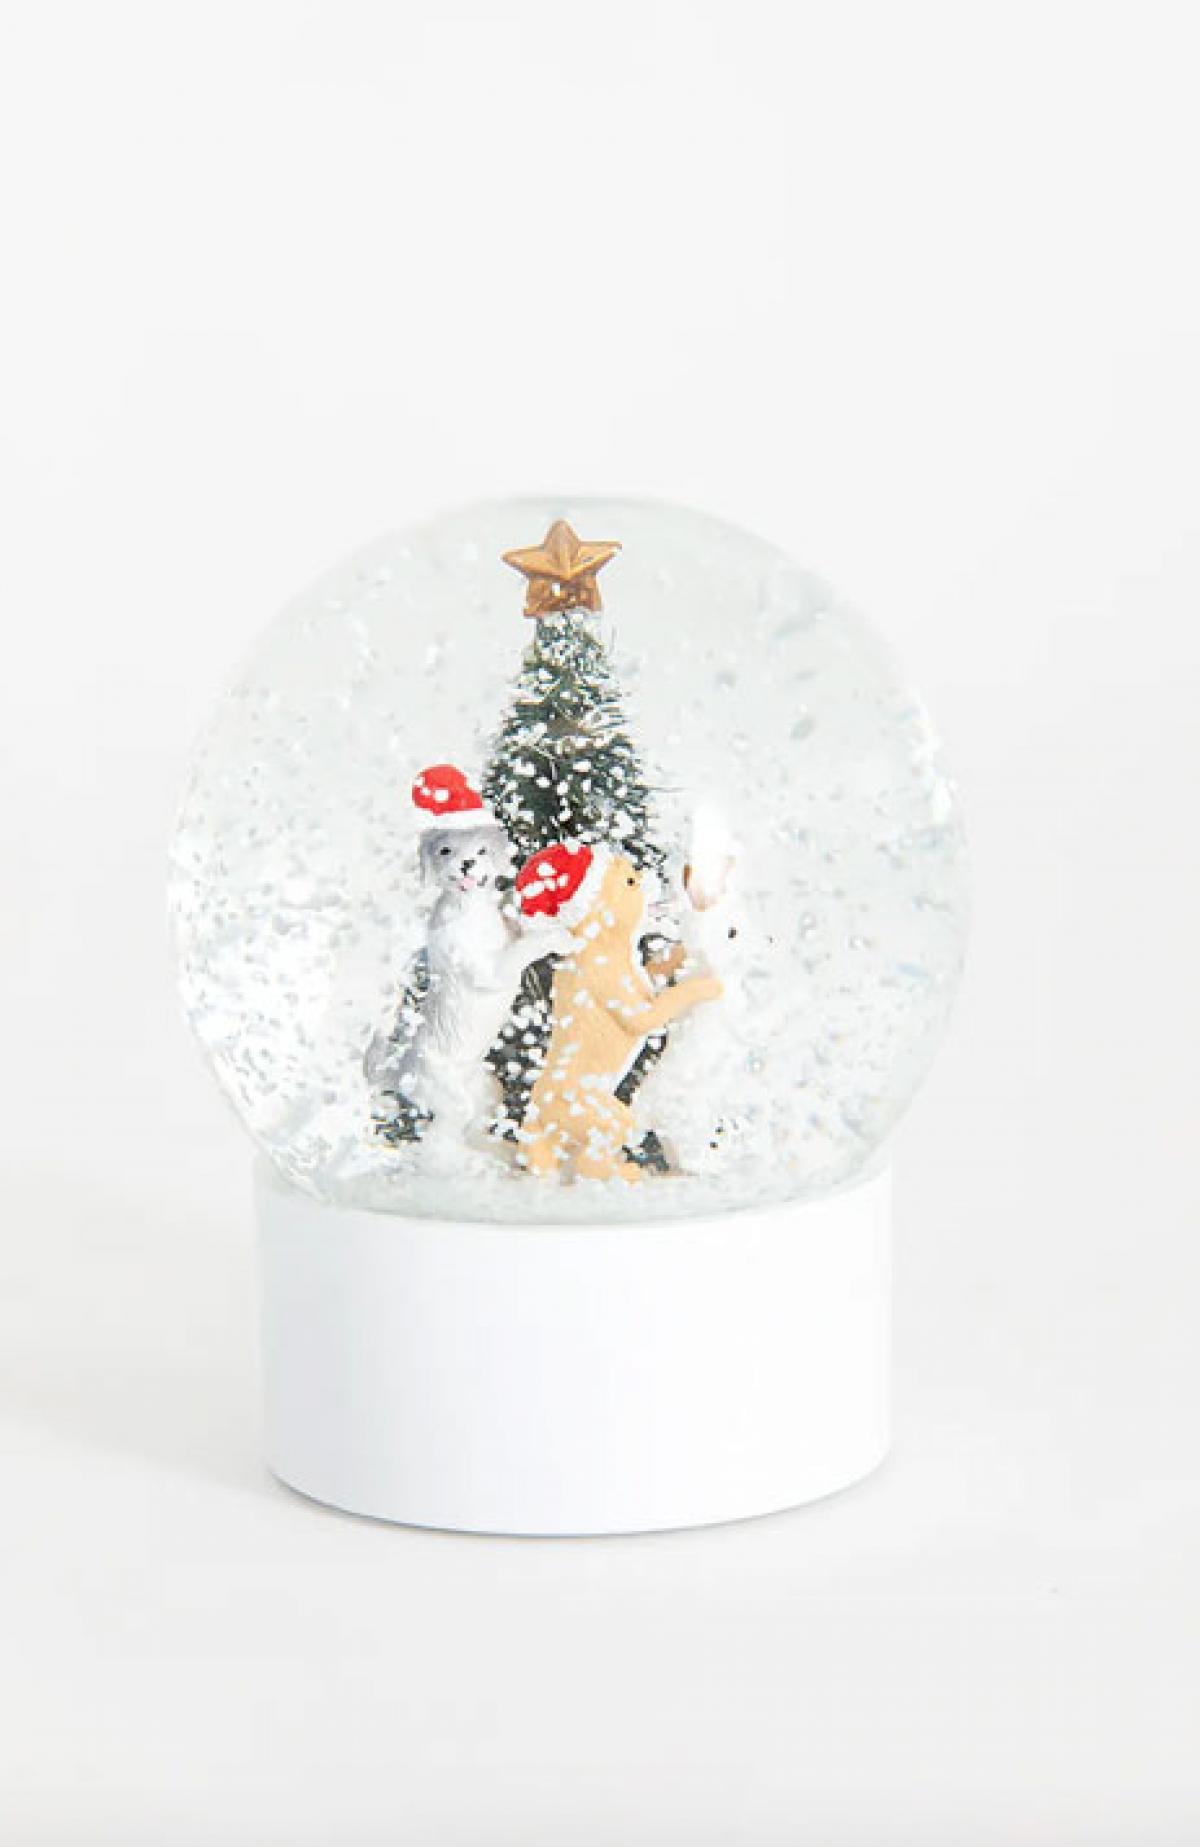 Sneeuwbol met honden rond kerstboom